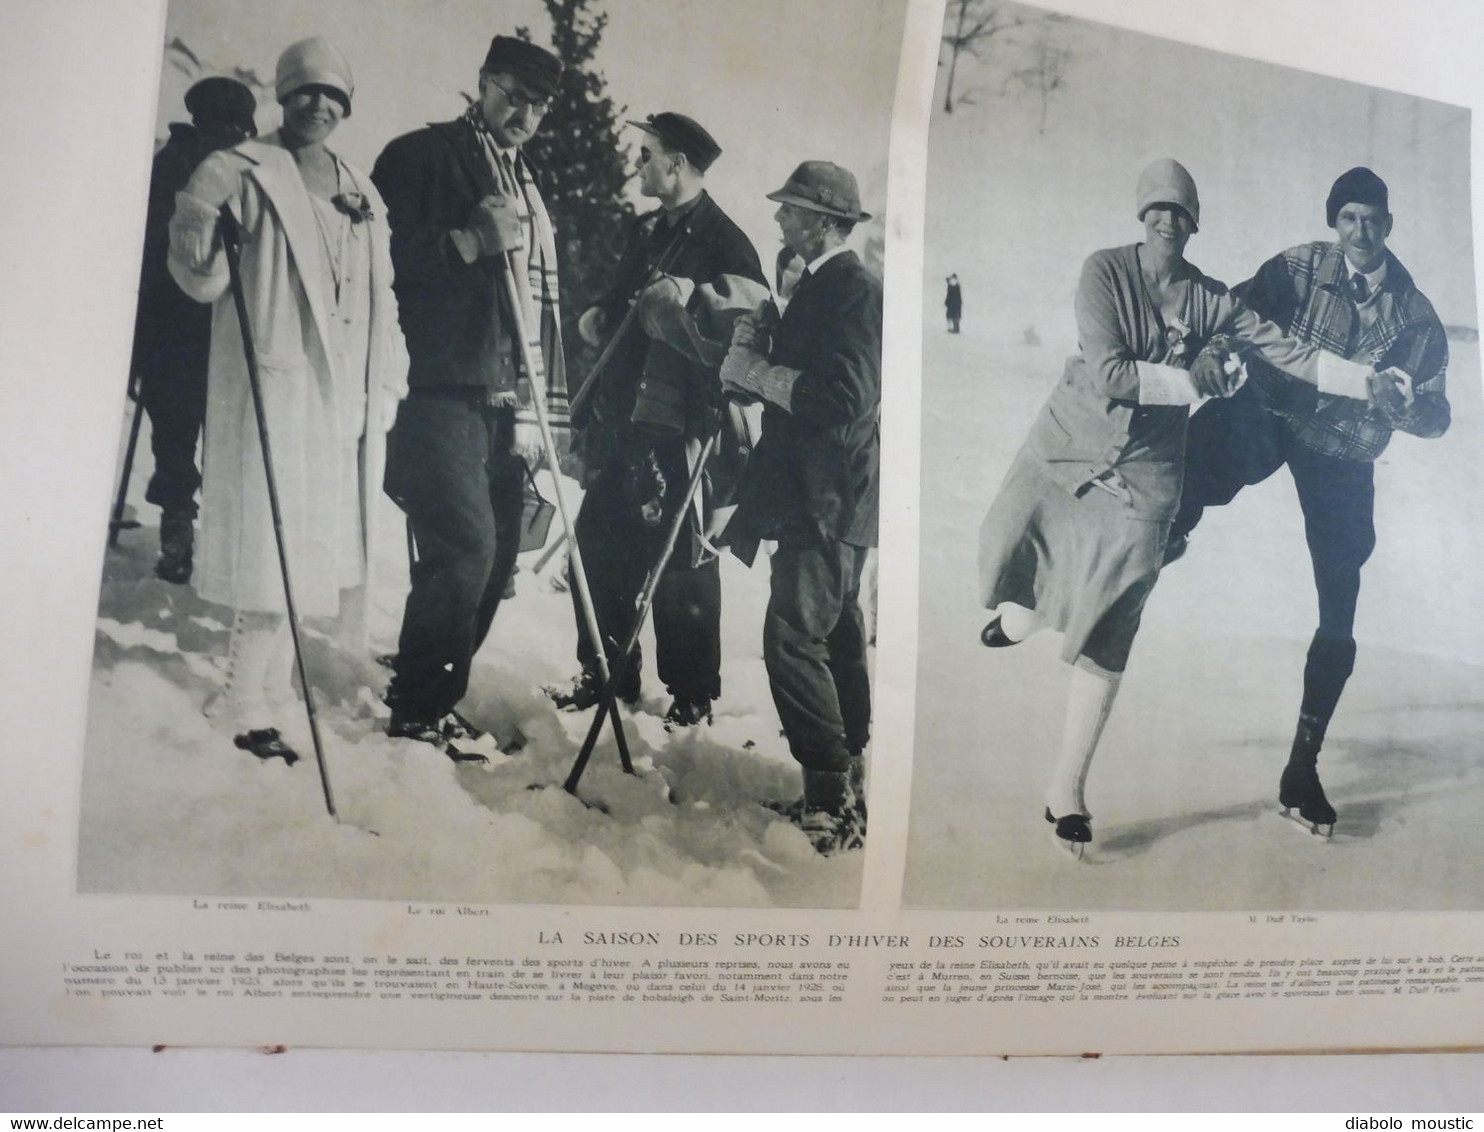 1929 : Chine; Les souverains belges aux sports d'hiver ; Exposition de la RELIURE; Ameublement; Armée du Salut; etc